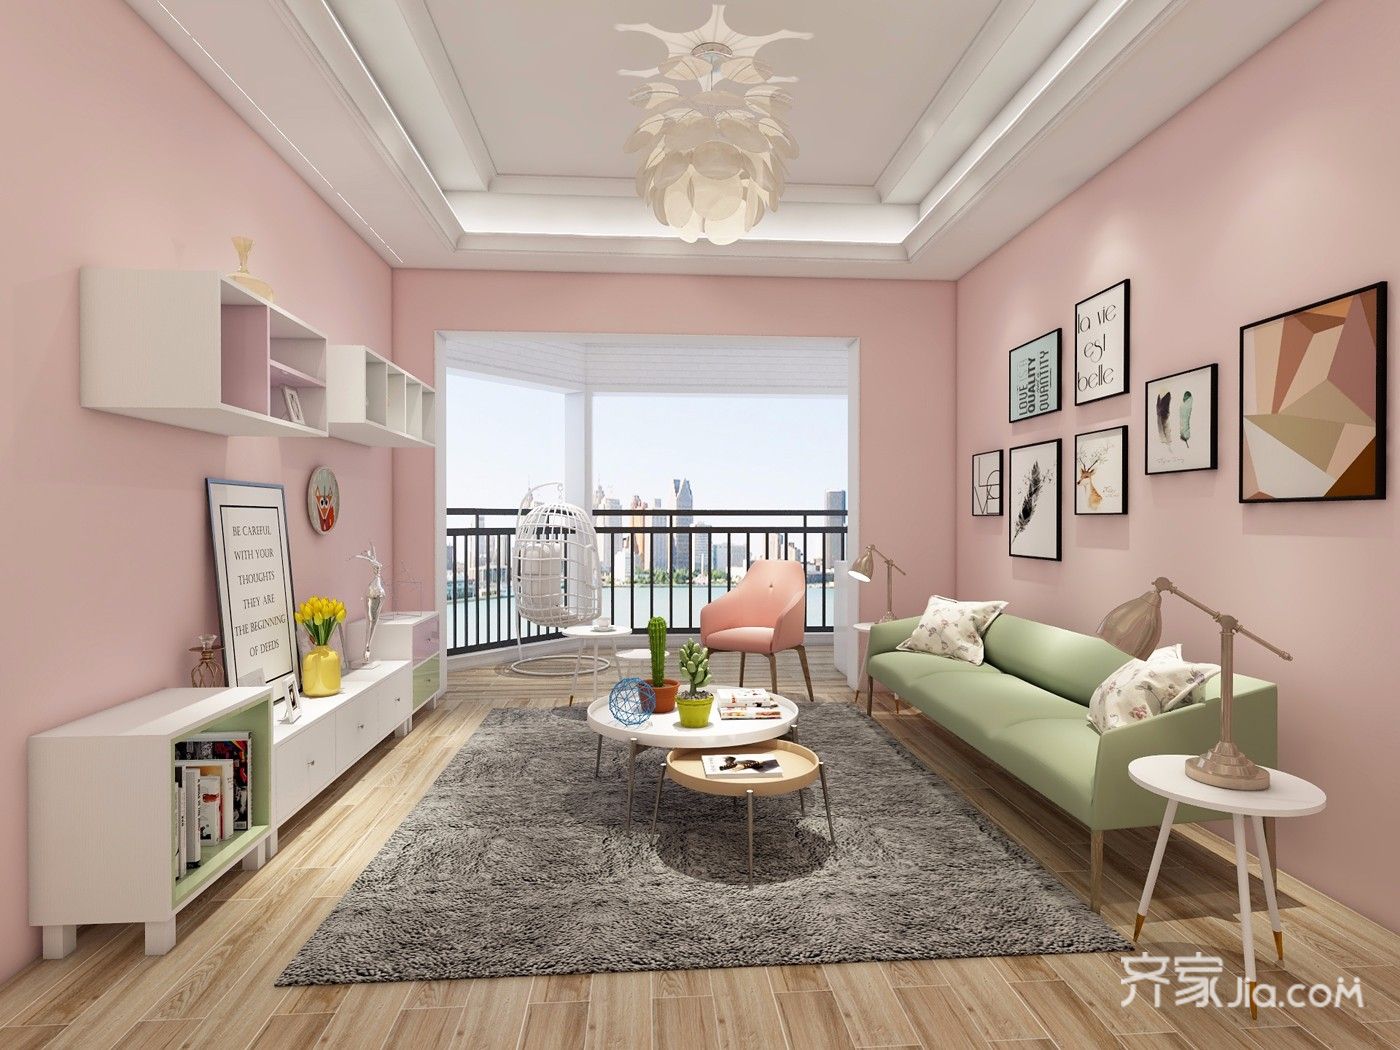 5-10万装修,二居室装修,80平米装修,简约风格,客厅,沙发背景墙,粉色